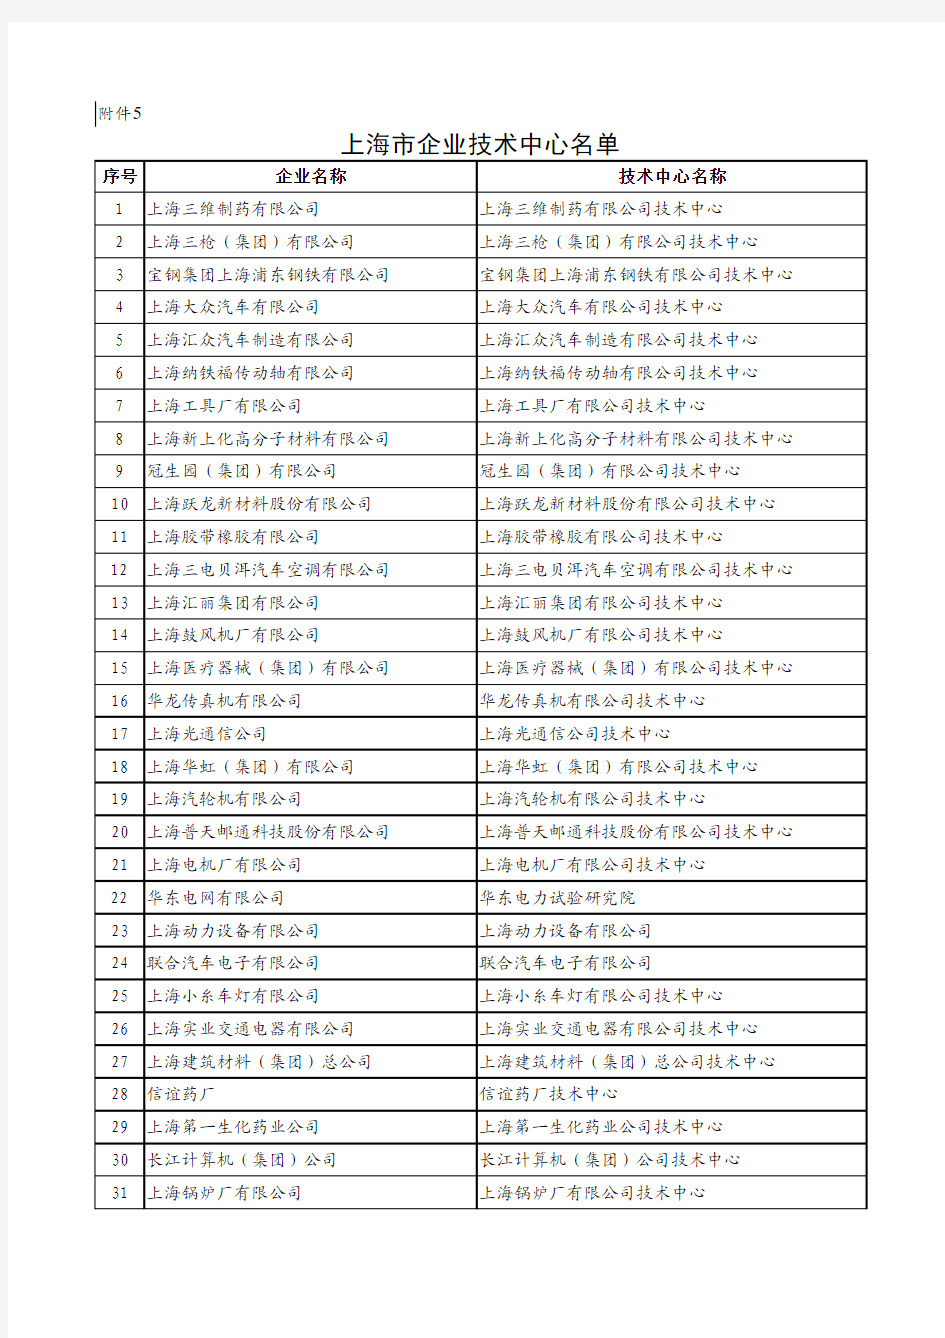 上海市企业技术中心名单(213家)